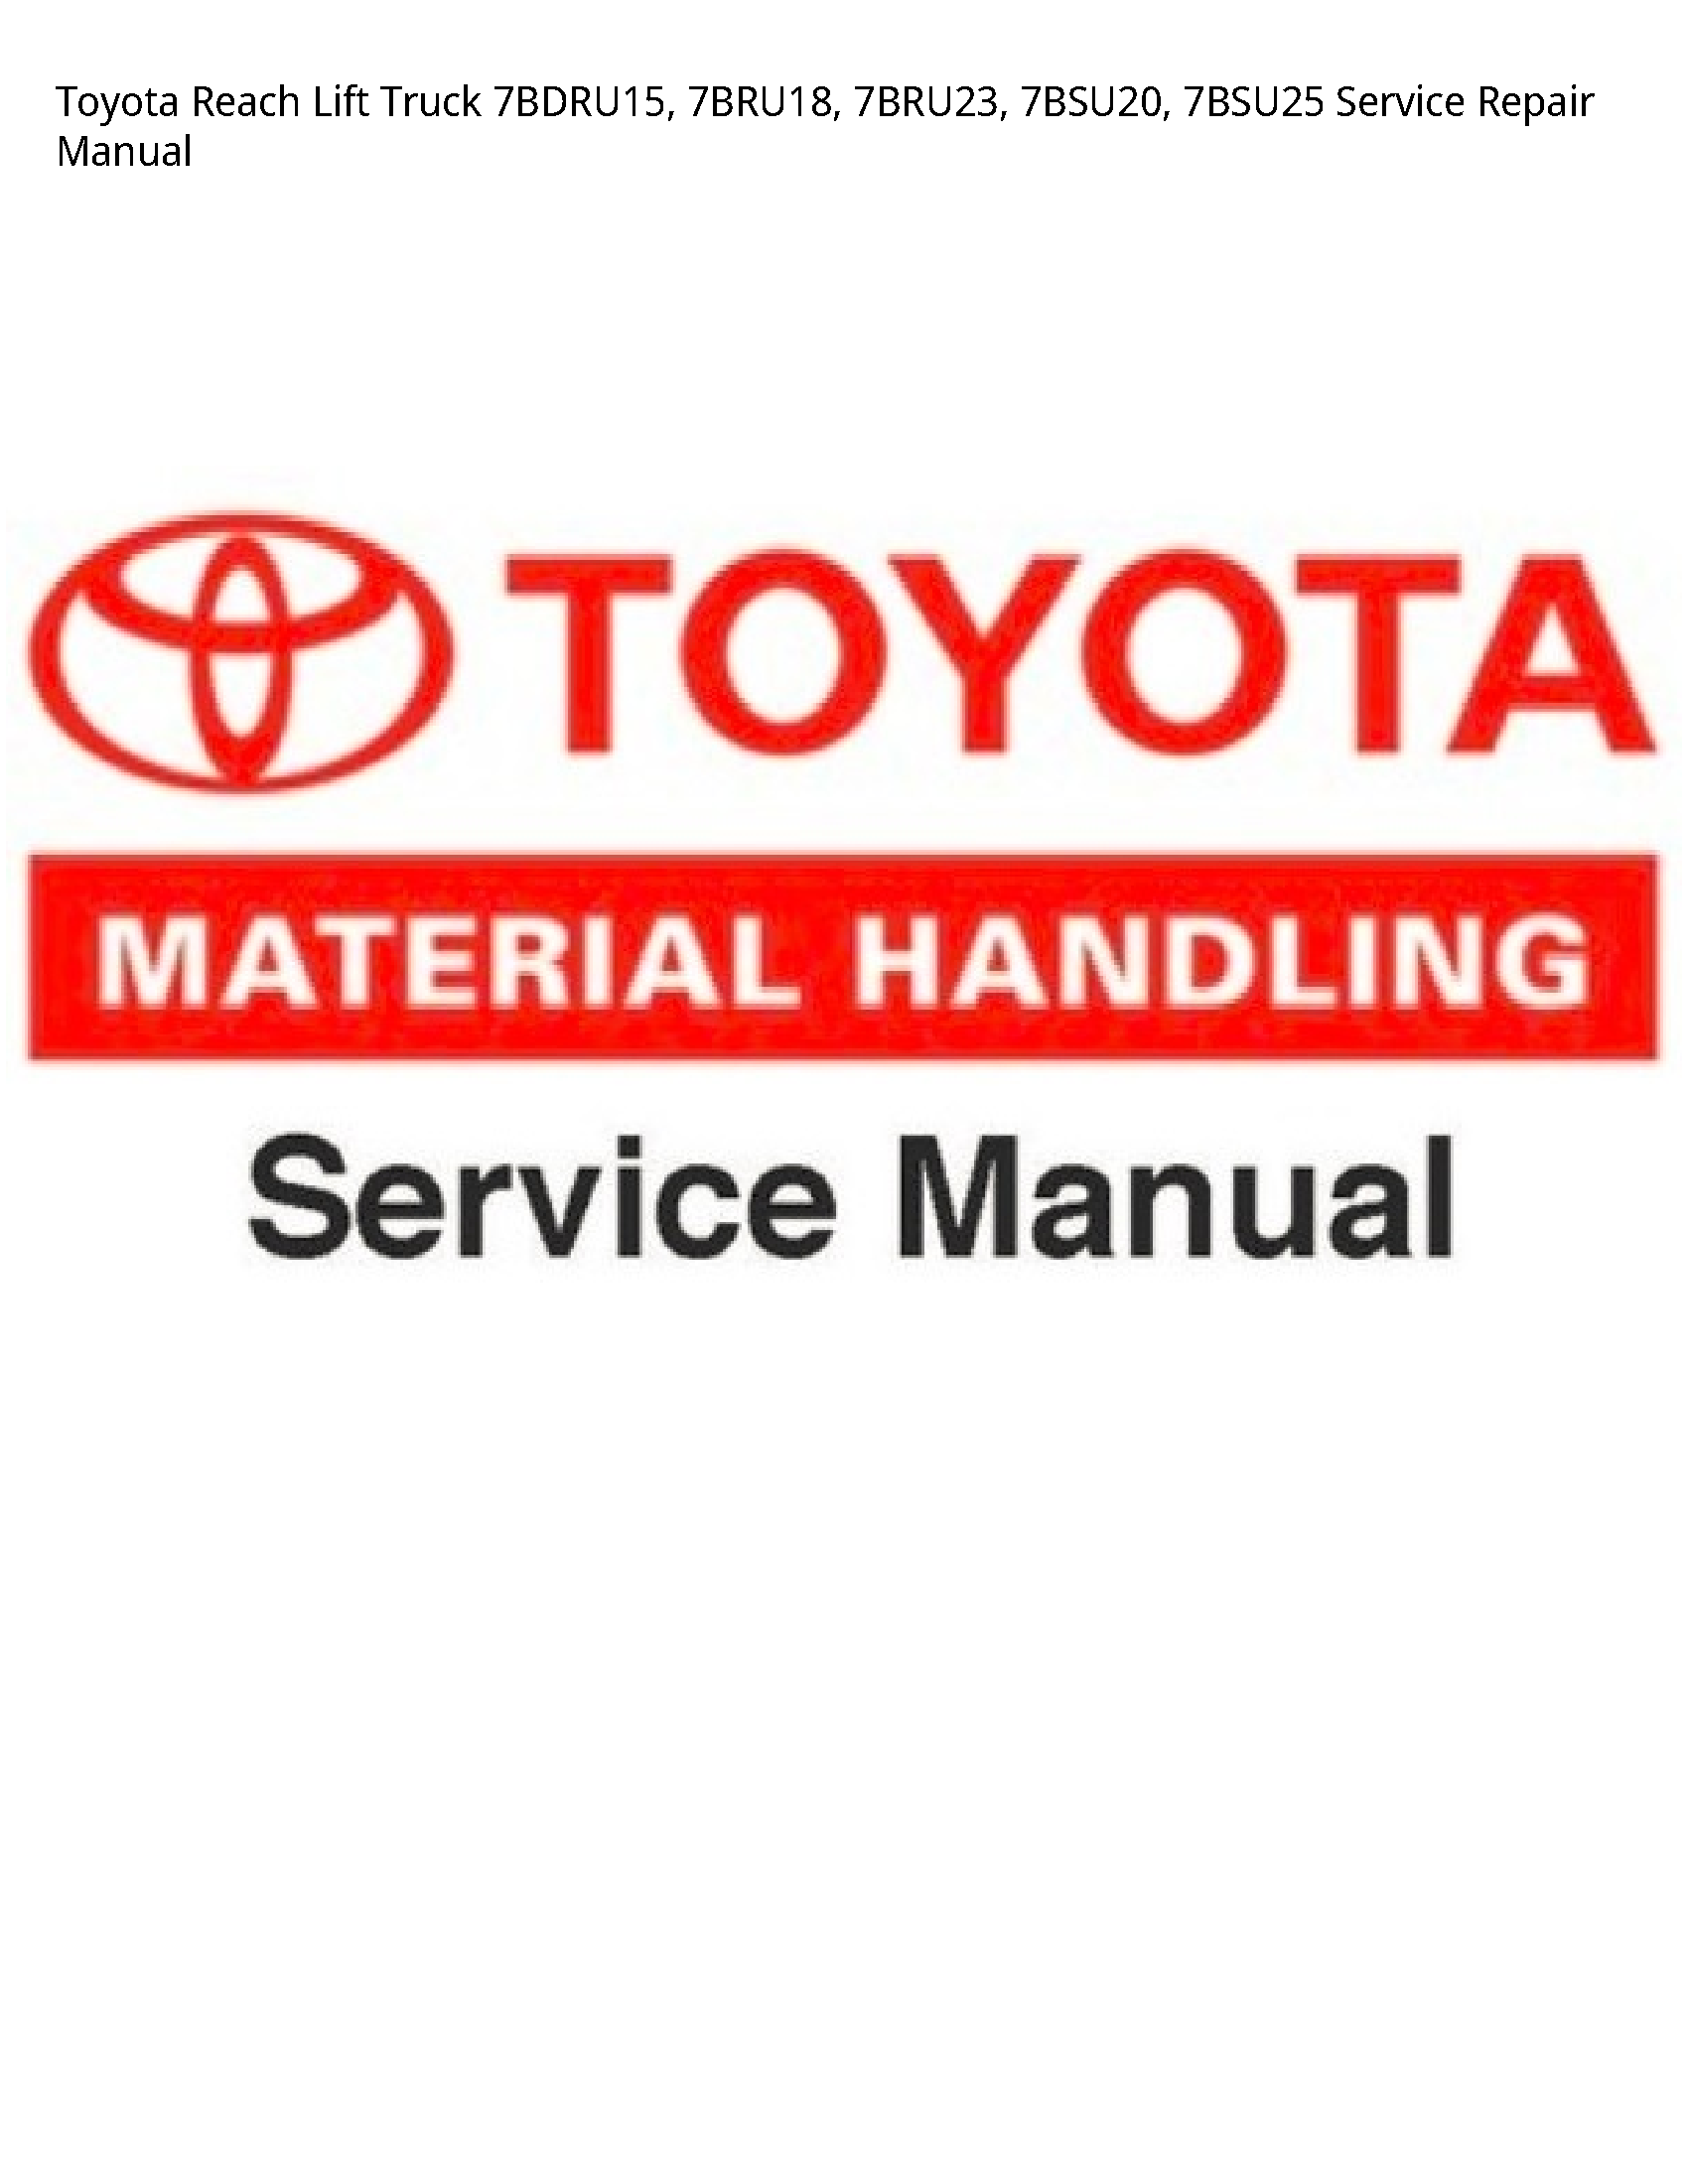 Toyota 7BDRU15 Reach Lift Truck manual